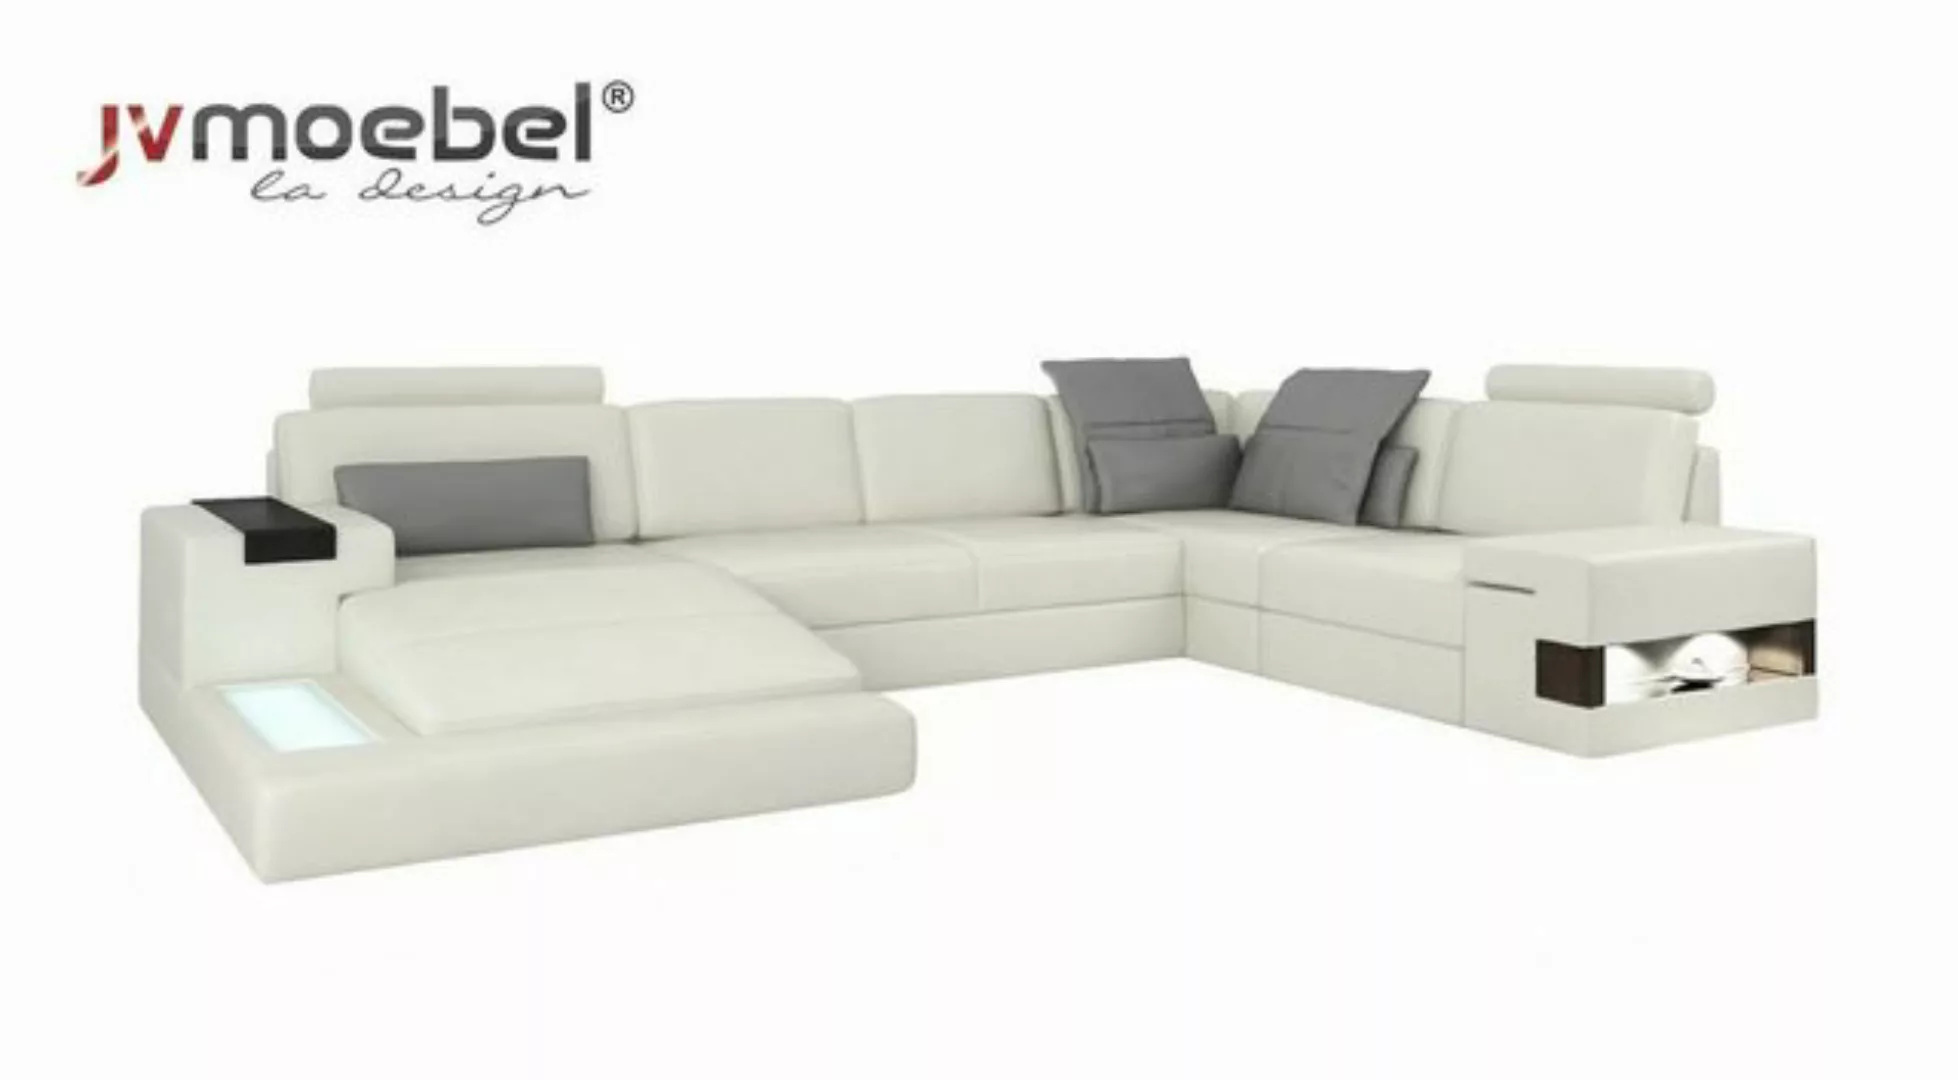 JVmoebel Ecksofa Ecksofa Wohnlandschaft U Form Sofa Eckcouch Couch Design, günstig online kaufen